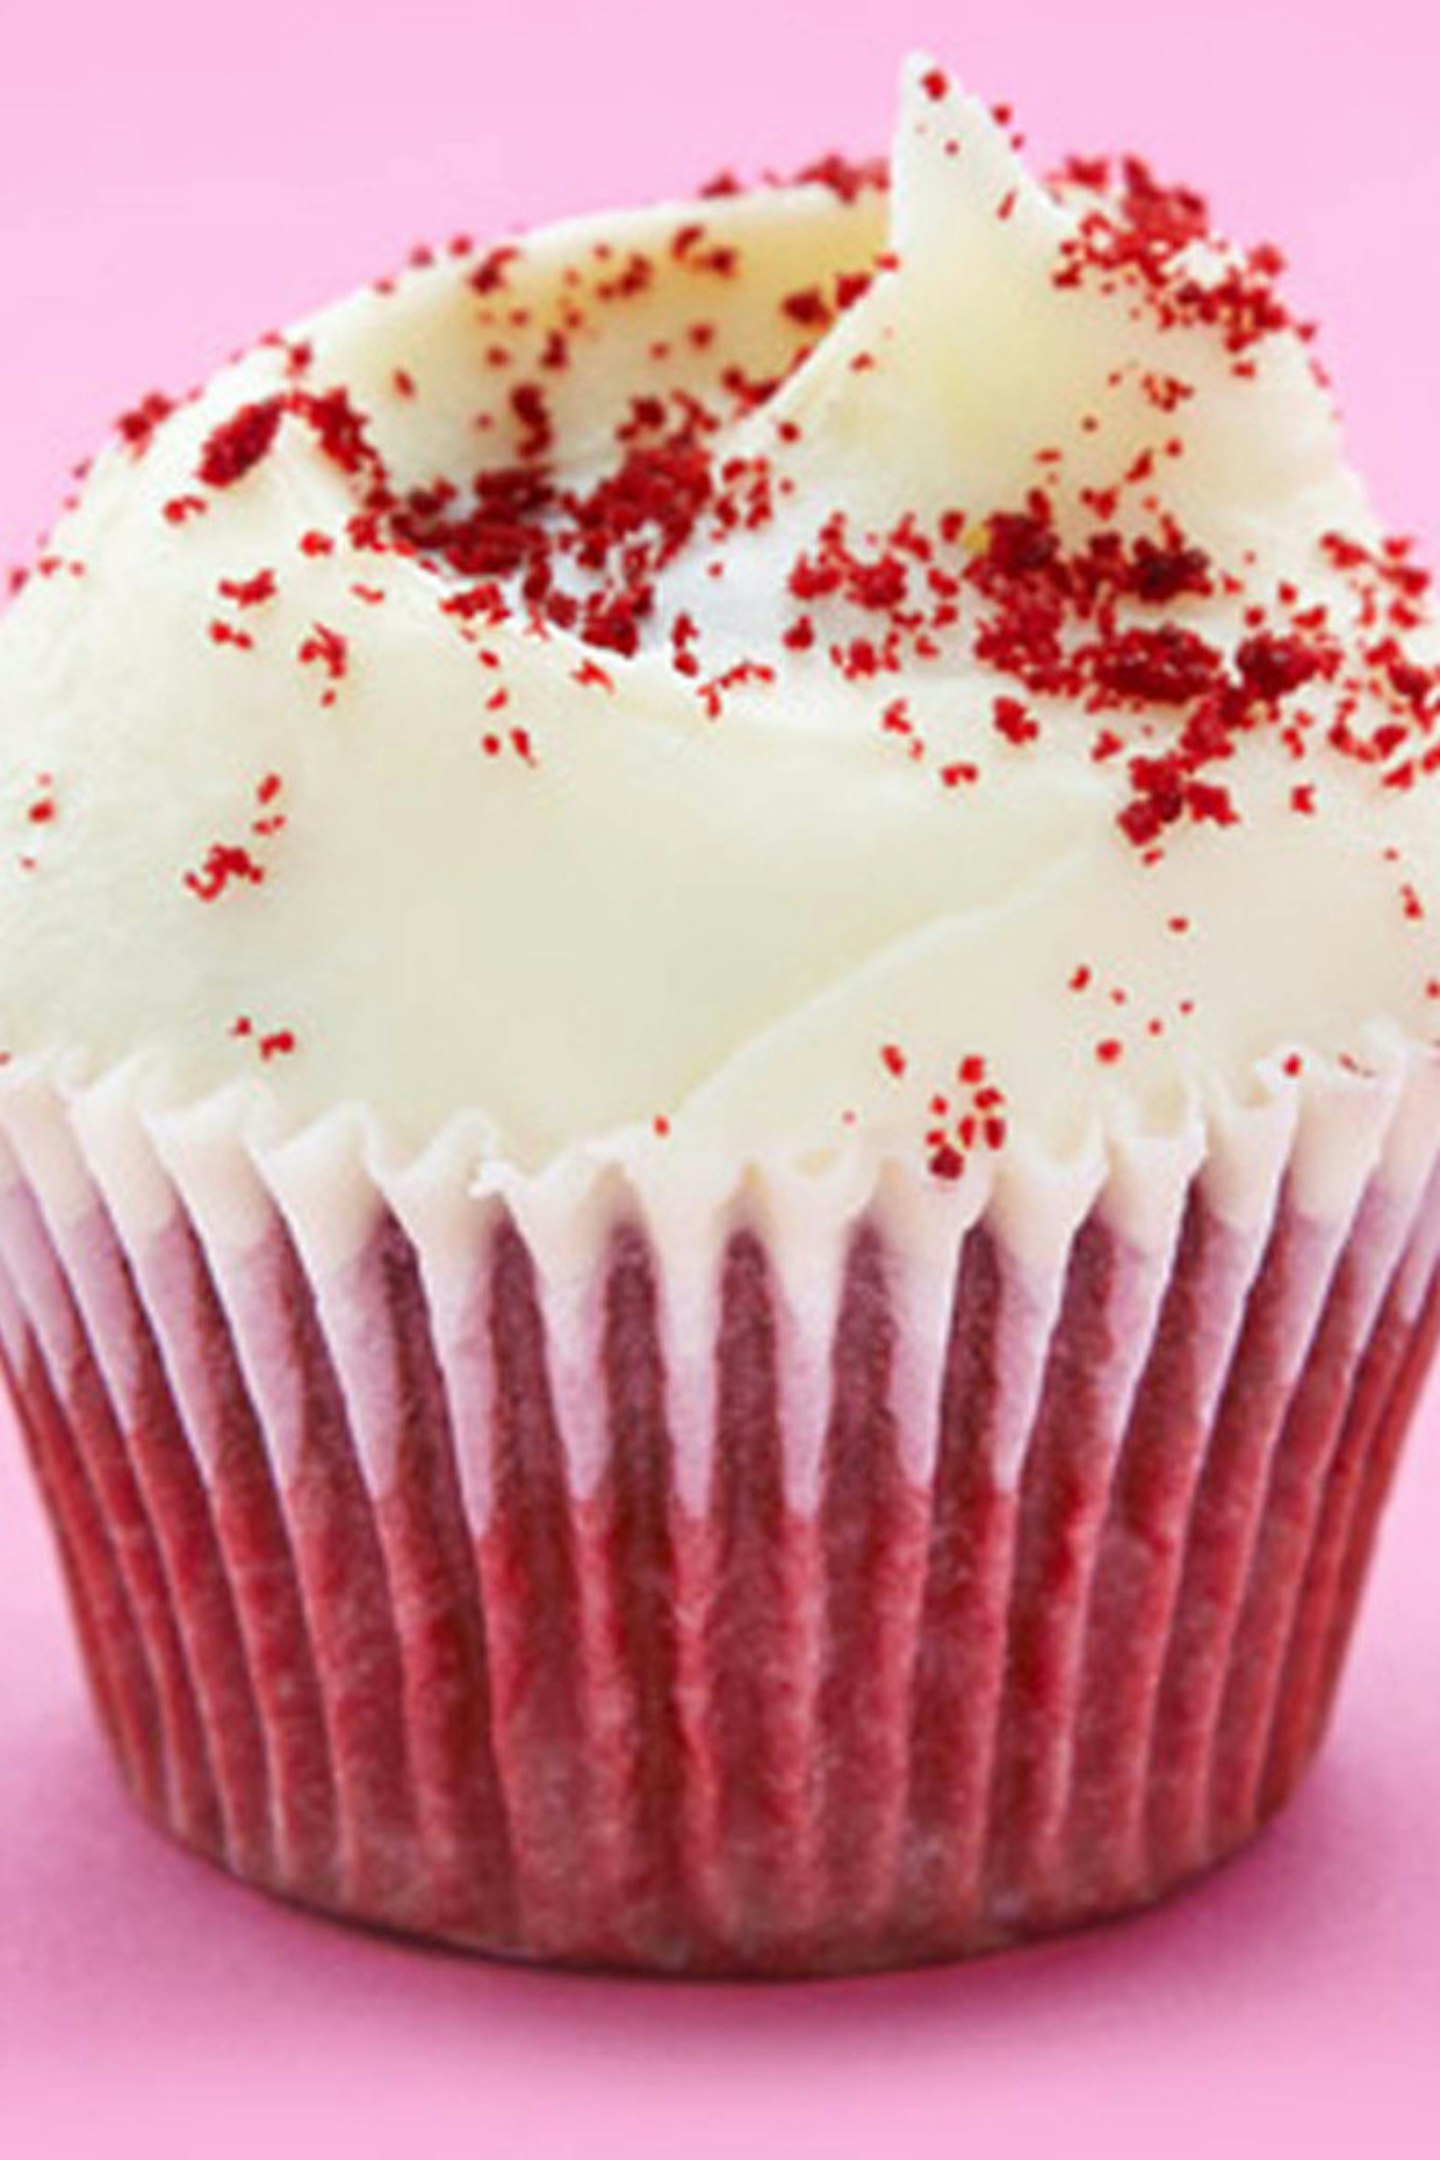 2. Red Velvet Cupcakes